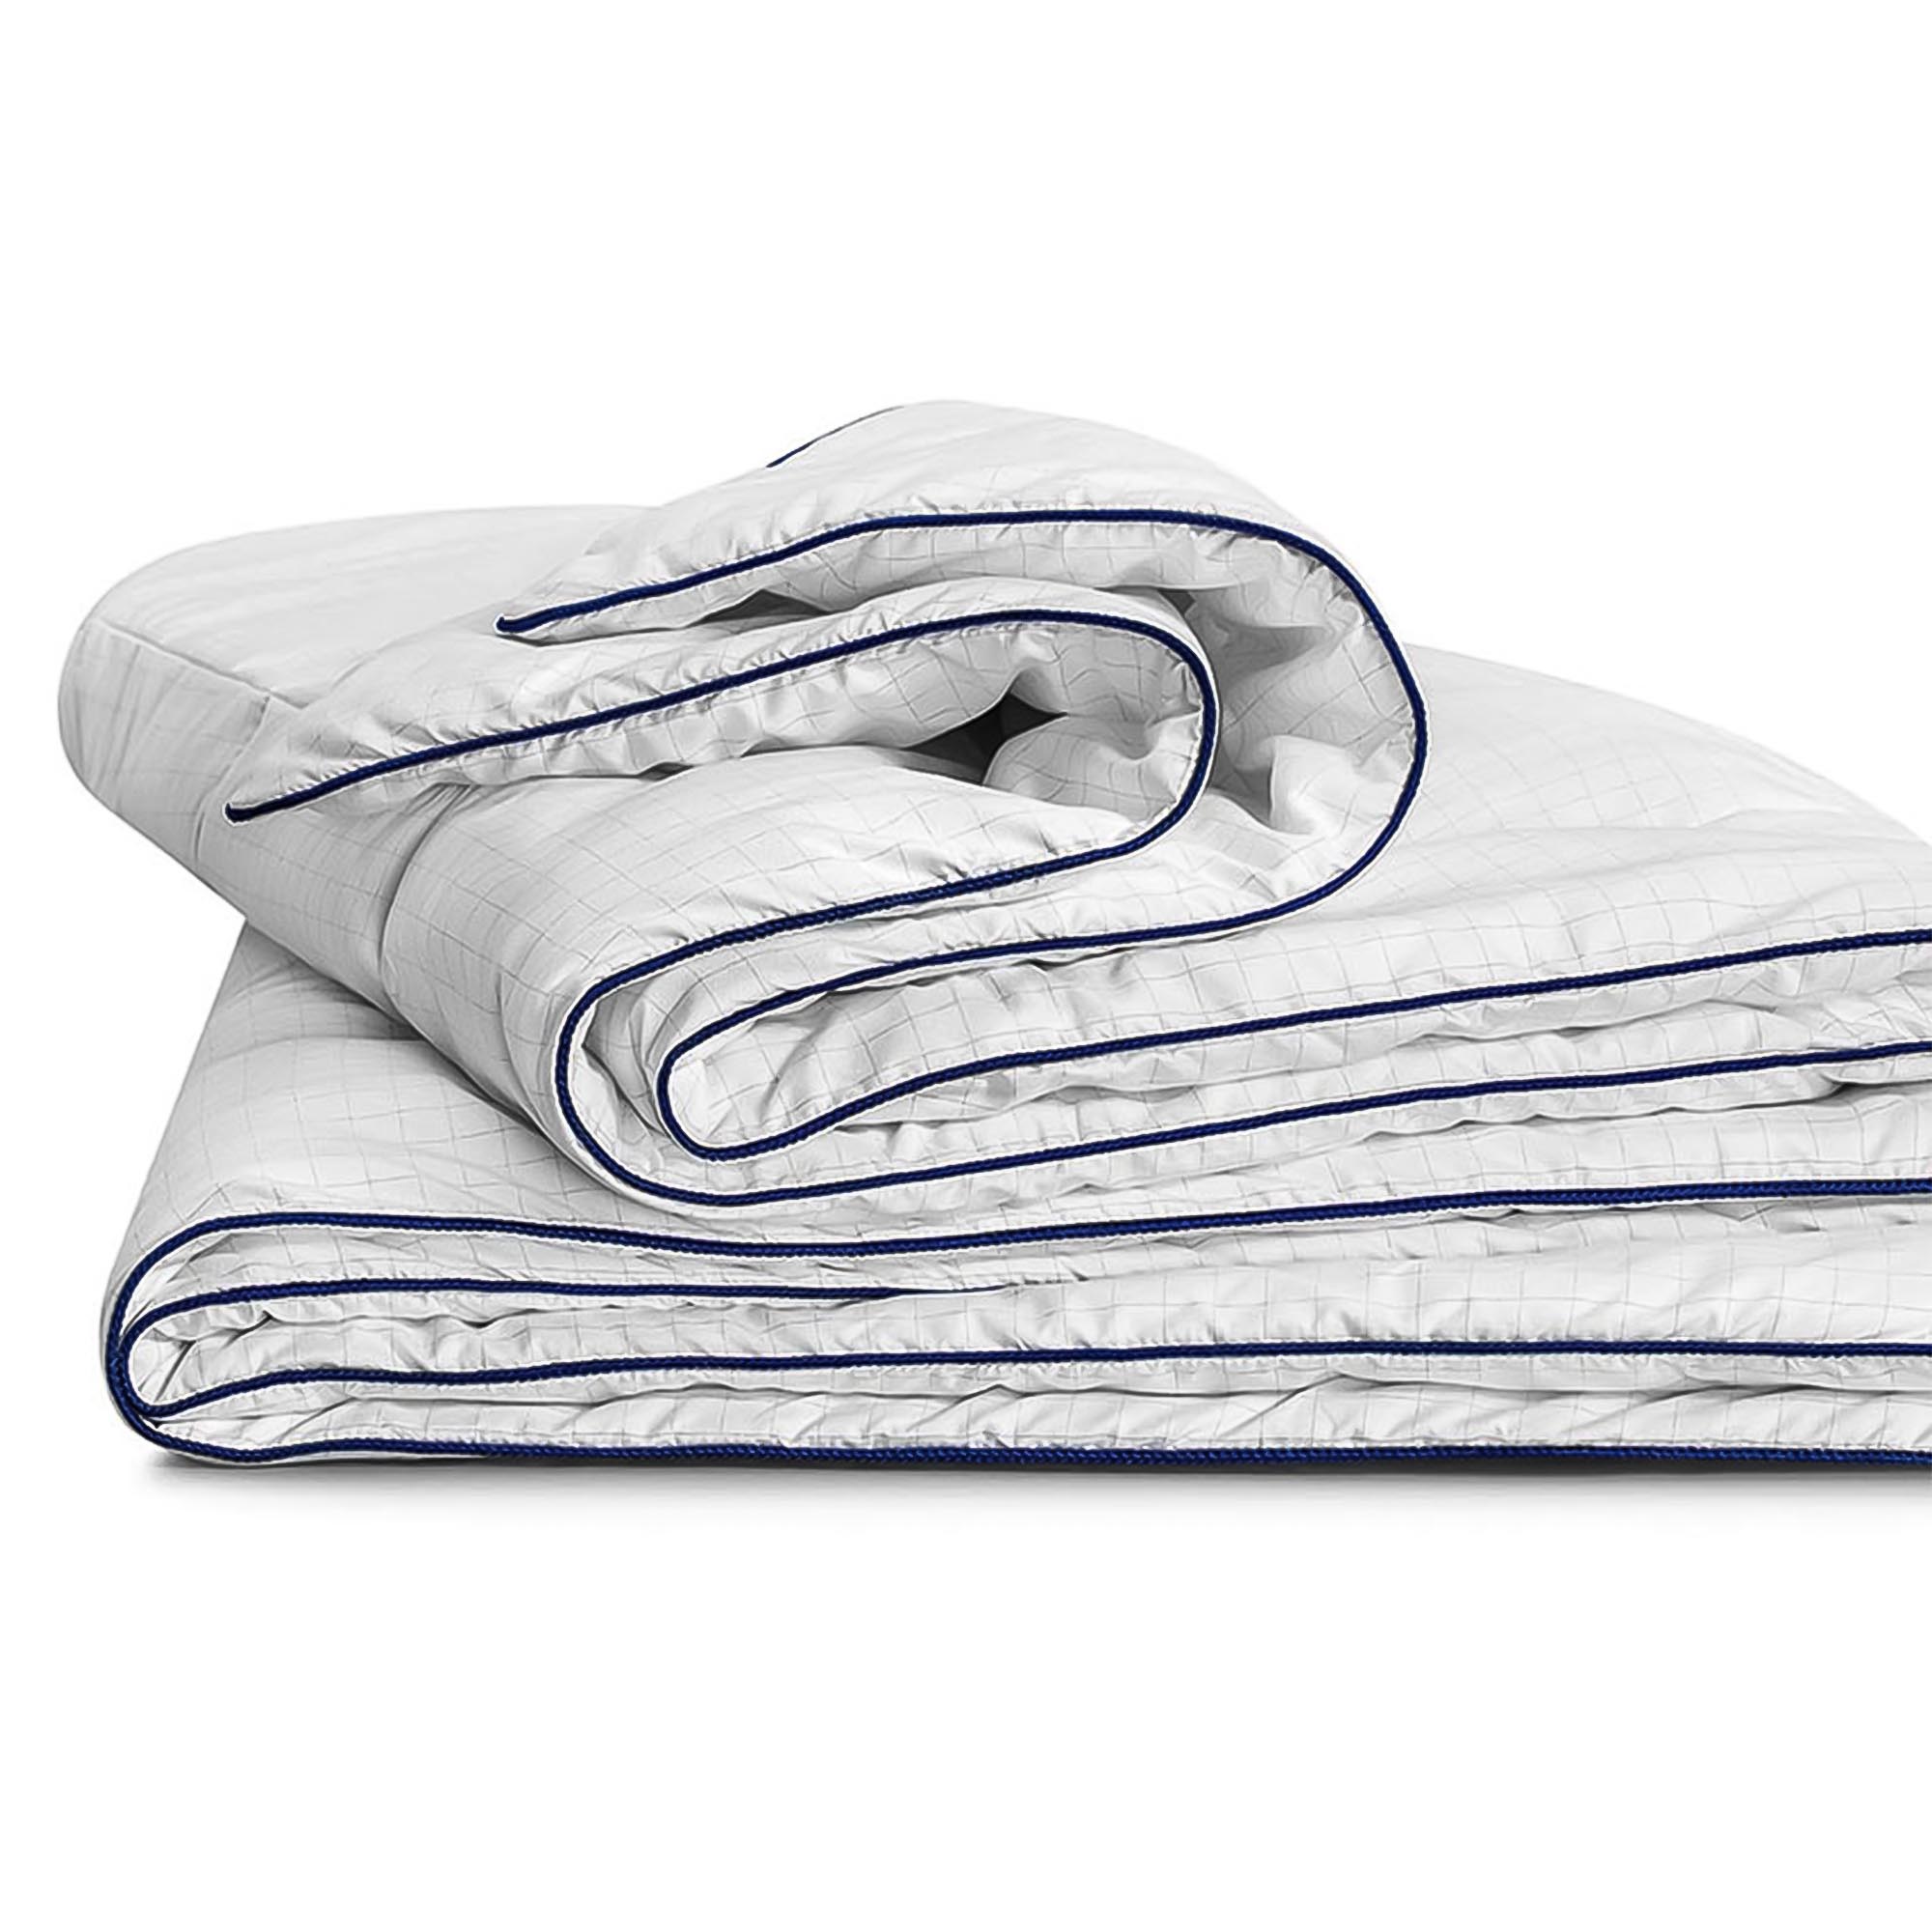 Одеяло Medsleep Nubi белое 200х210 см, цвет белый - фото 3